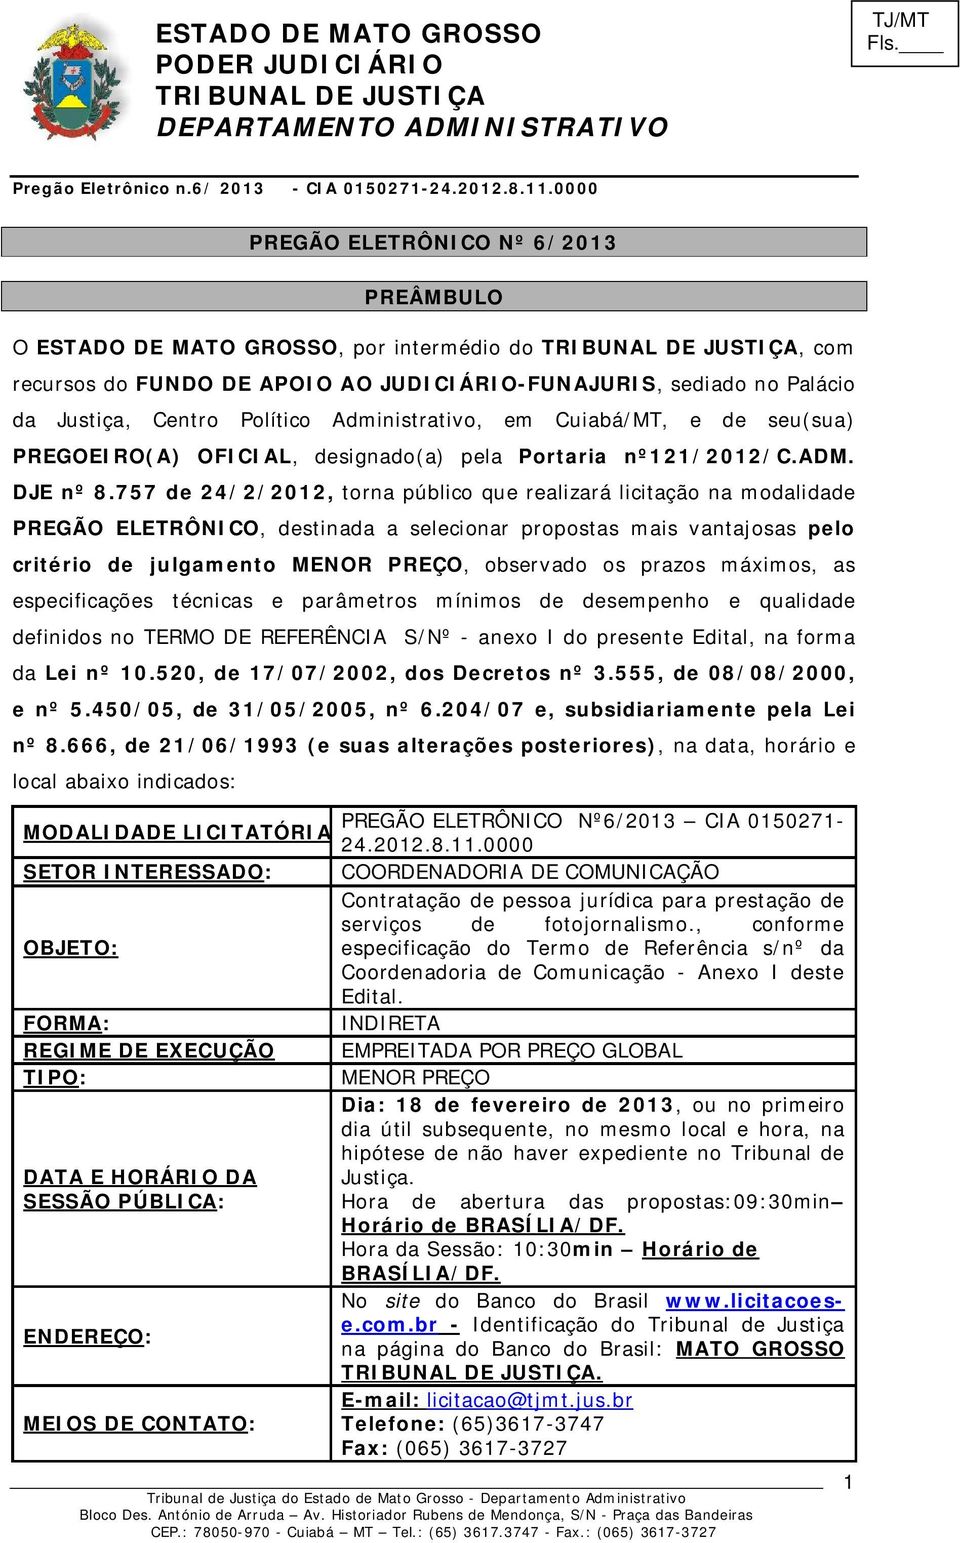 757 de 24/2/2012, torna público que realizará licitação na modalidade PREGÃO ELETRÔNICO, destinada a selecionar propostas mais vantajosas pelo critério de julgamento MENOR PREÇO, observado os prazos